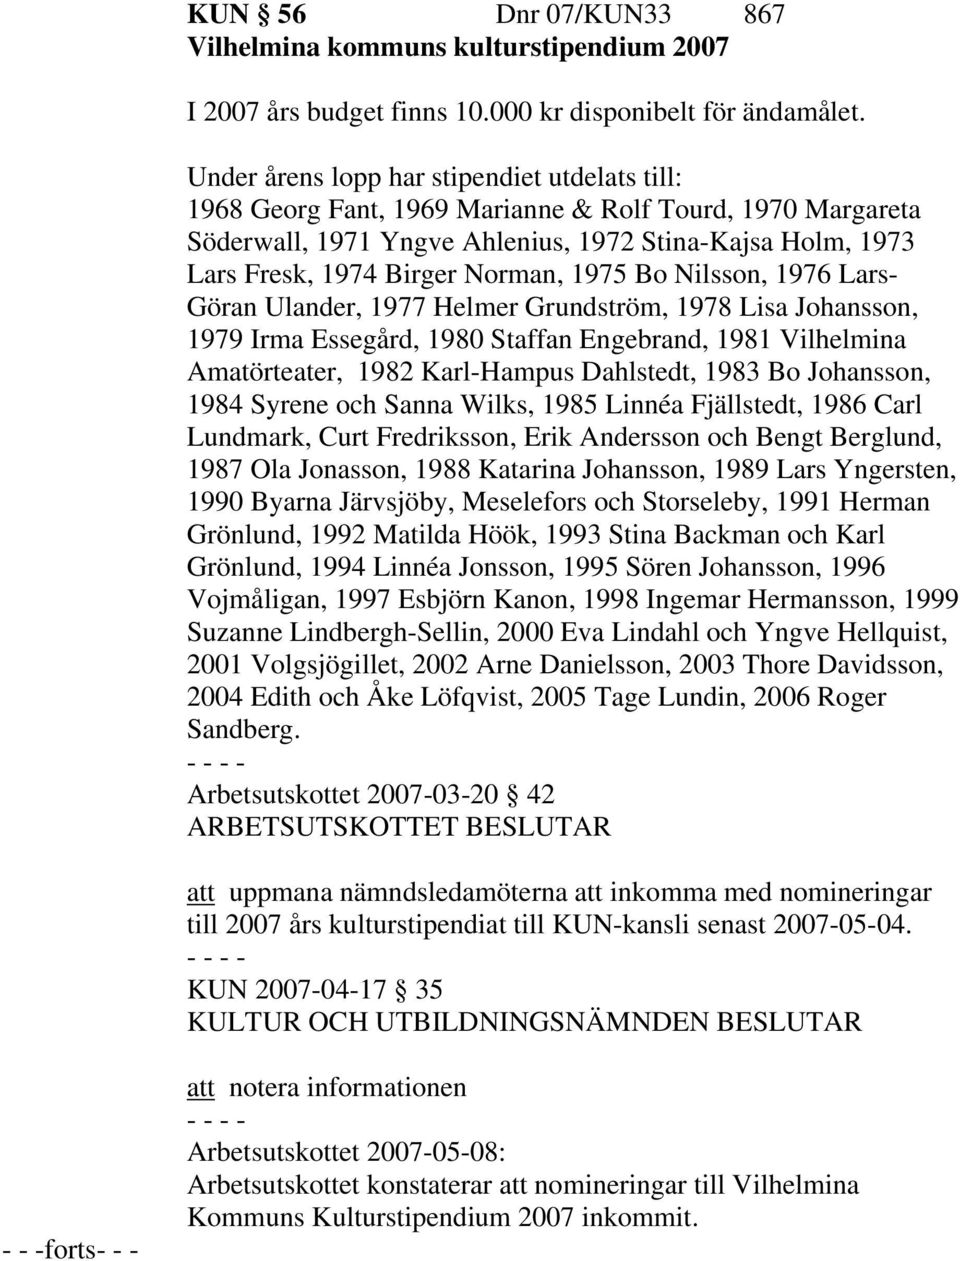 1975 Bo Nilsson, 1976 Lars- Göran Ulander, 1977 Helmer Grundström, 1978 Lisa Johansson, 1979 Irma Essegård, 1980 Staffan Engebrand, 1981 Vilhelmina Amatörteater, 1982 Karl-Hampus Dahlstedt, 1983 Bo